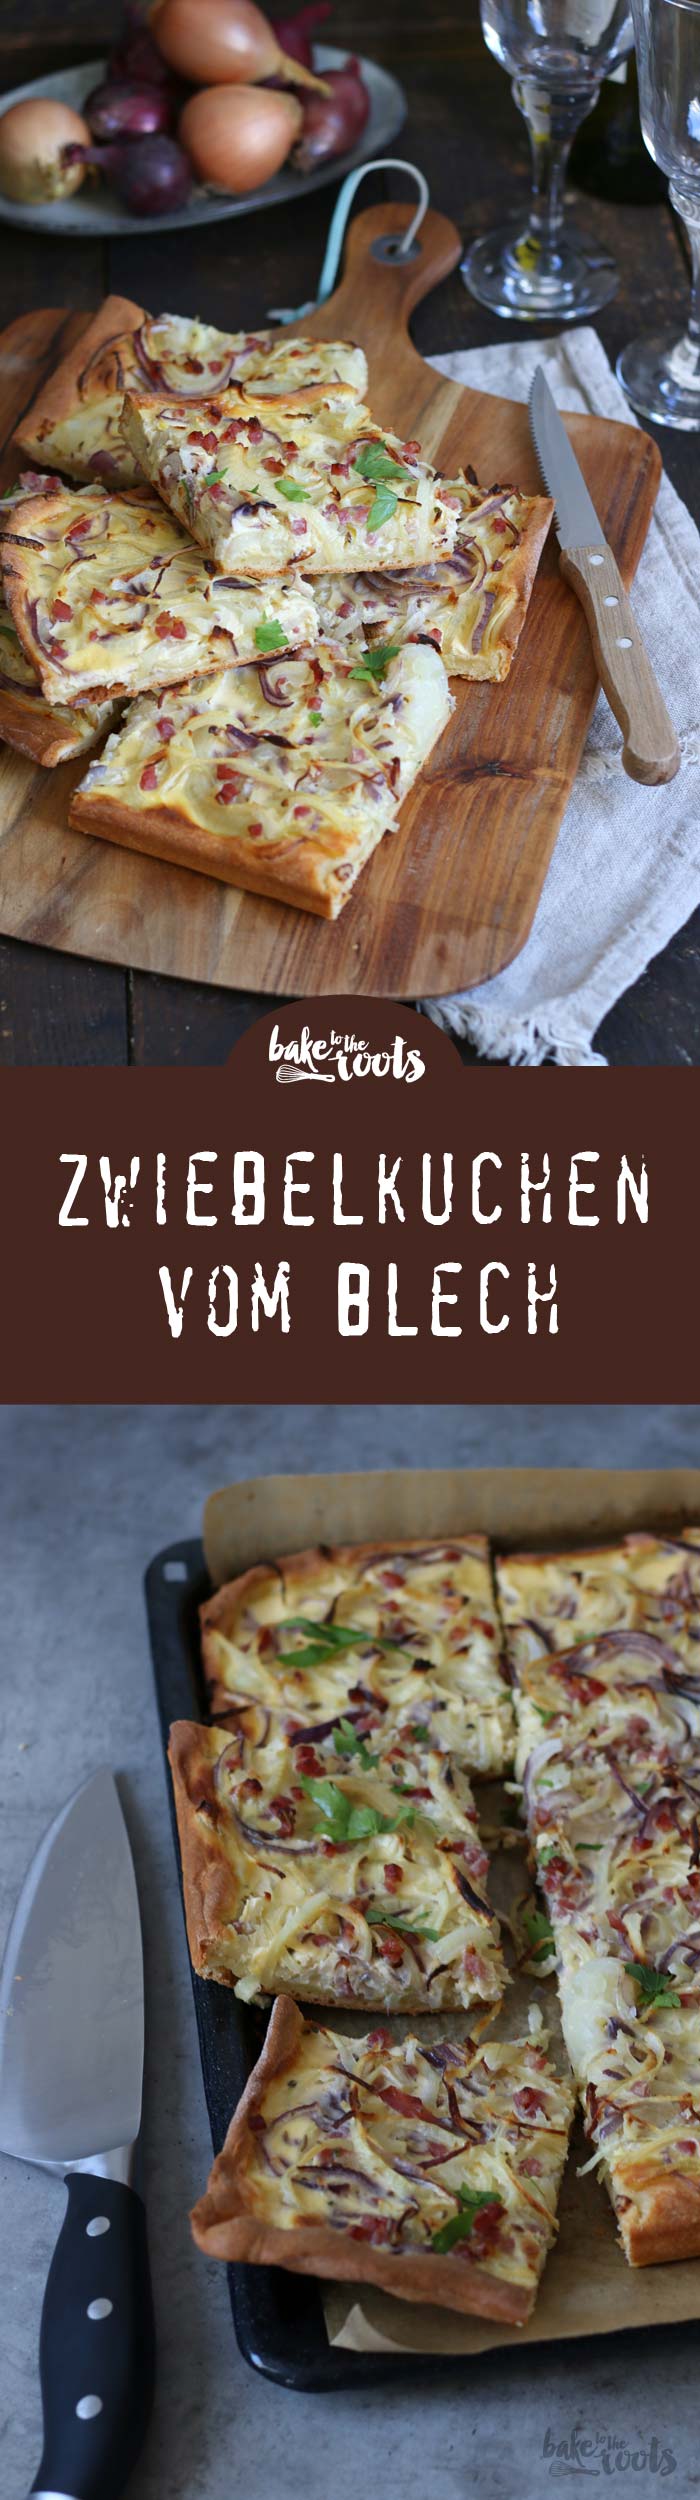 Zwiebelkuchen vom Blech | Bake to the roots